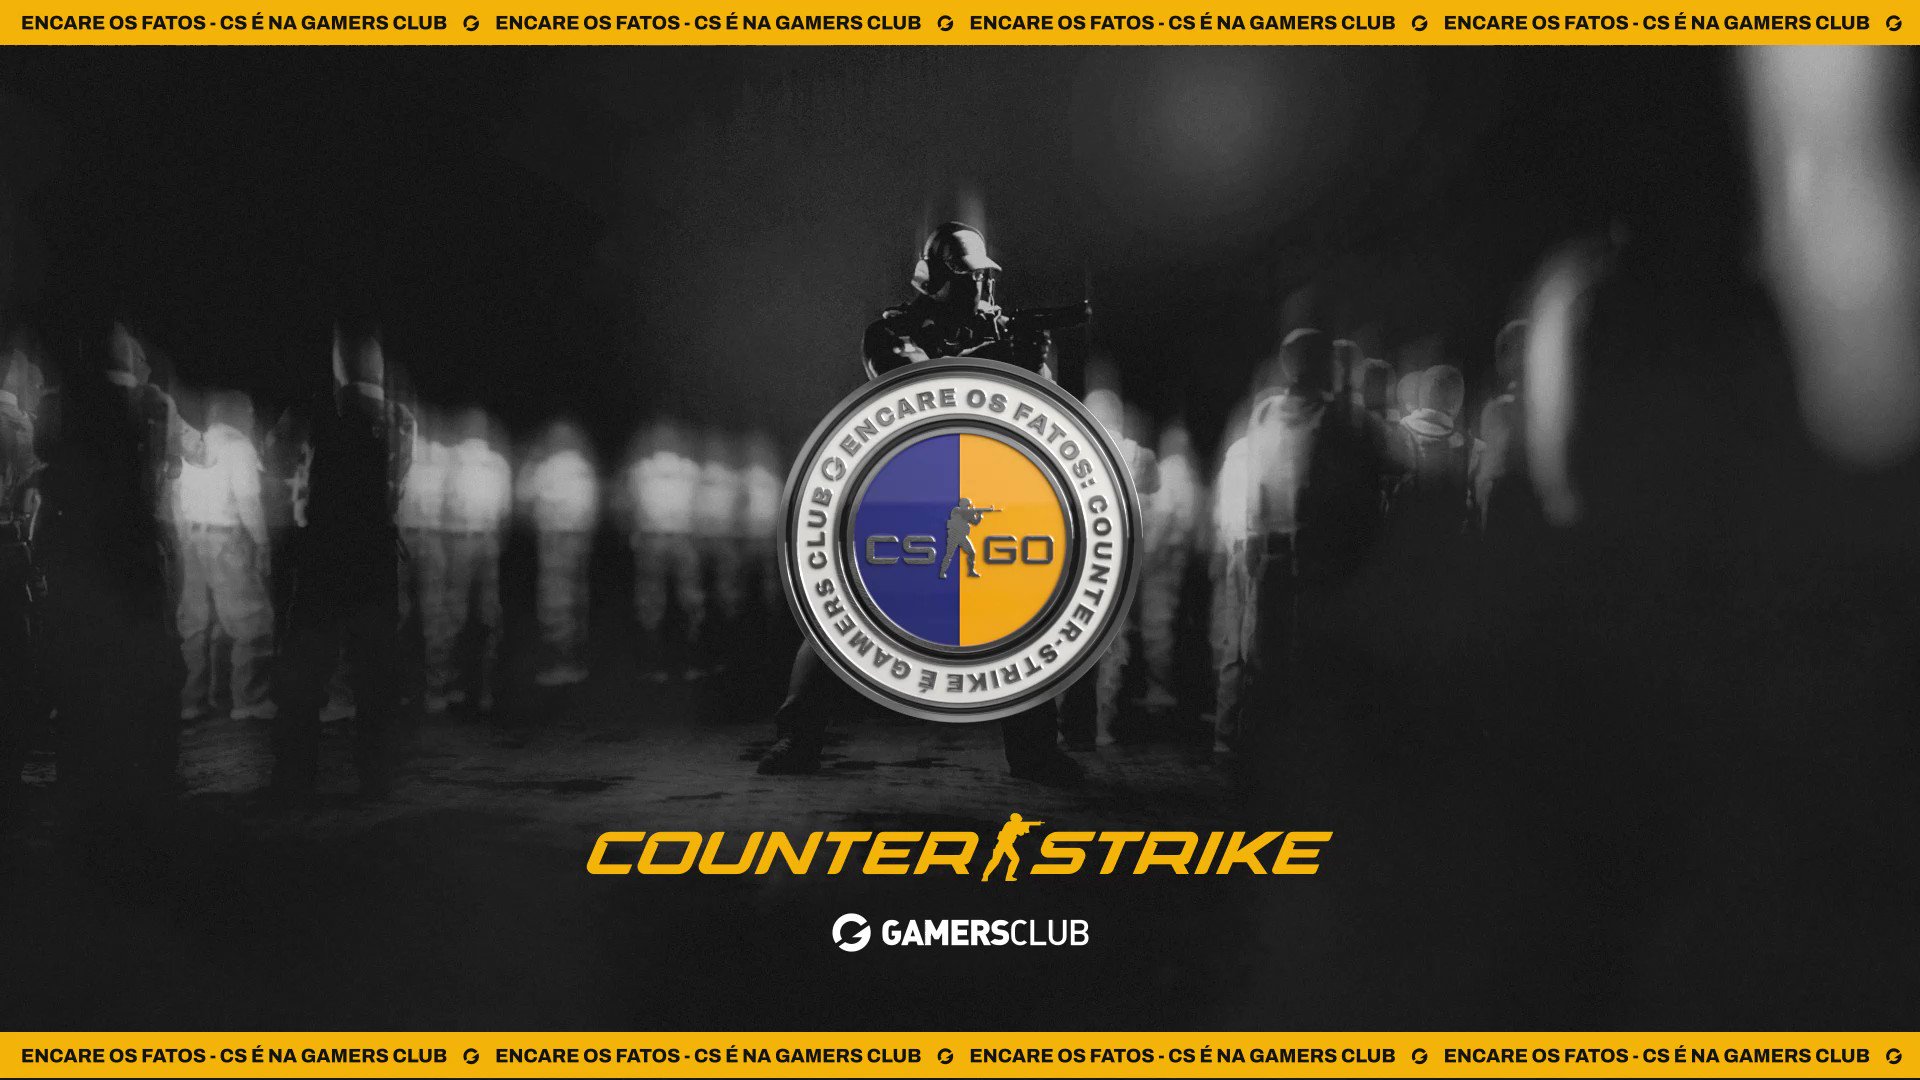 Gamers Club Counter-Strike on X: Chegou a Liga Gamers Club, o nosso novo  circuito de ligas e seu novo caminho competitivo 🔥 Para conhecer todas as  mudanças e como vai rolar, se